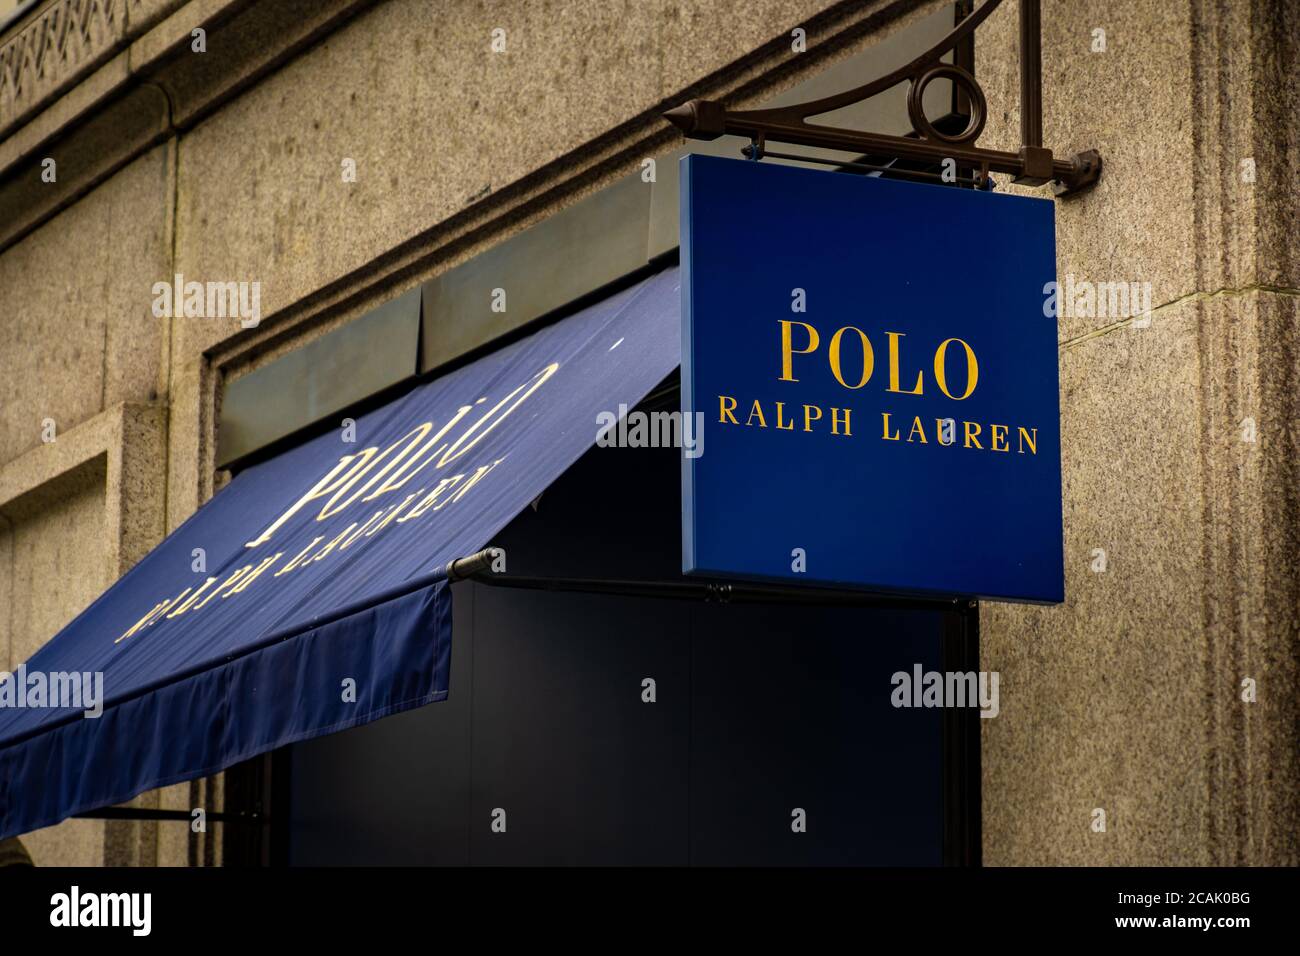 Londres - Polo Ralph Lauren affiche des magasins de détail dans l'Ouest de Londres Fin Banque D'Images